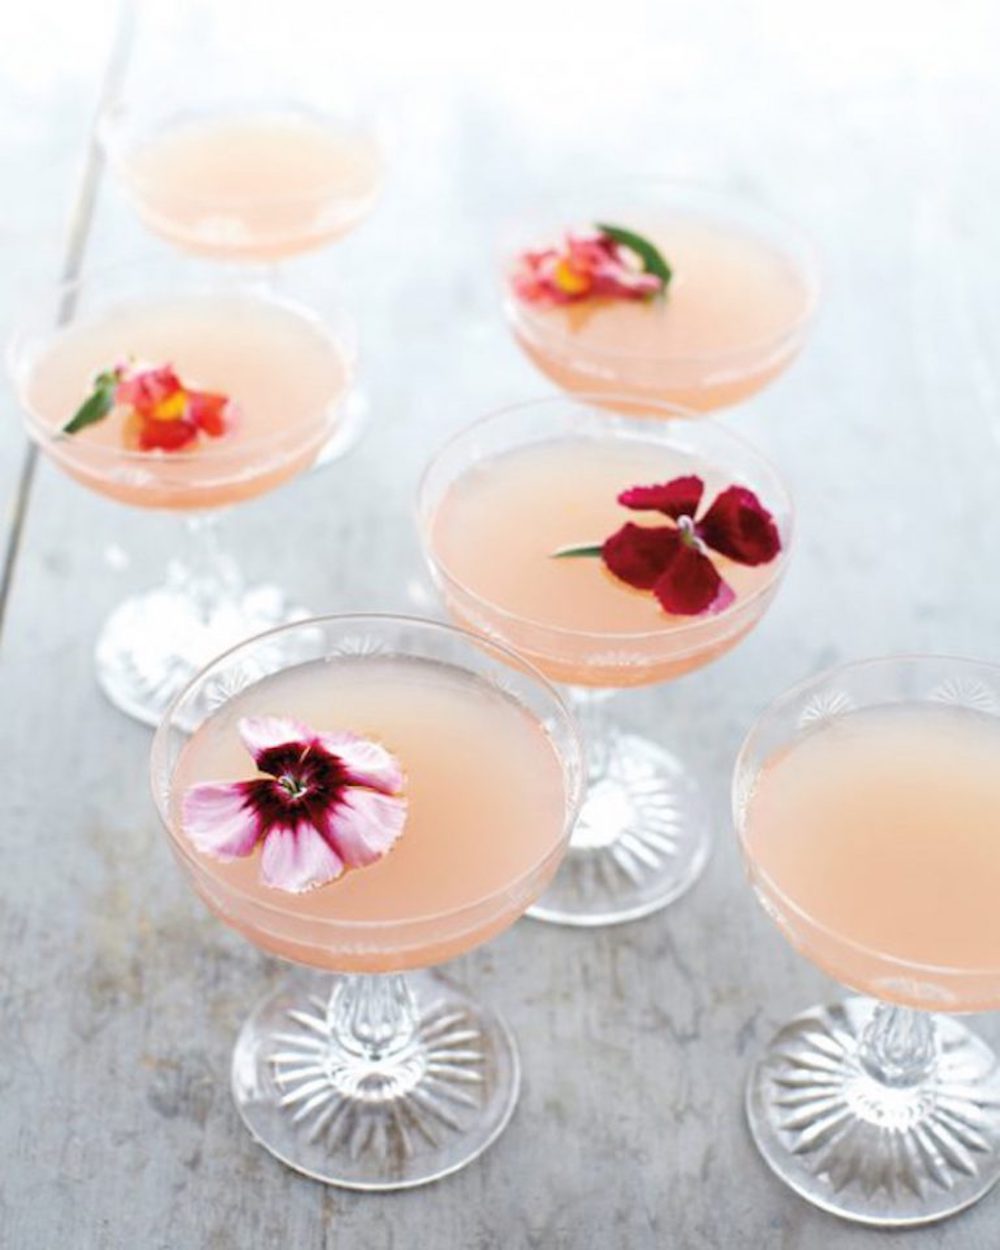 Lillet rose cocktail - martha stewart